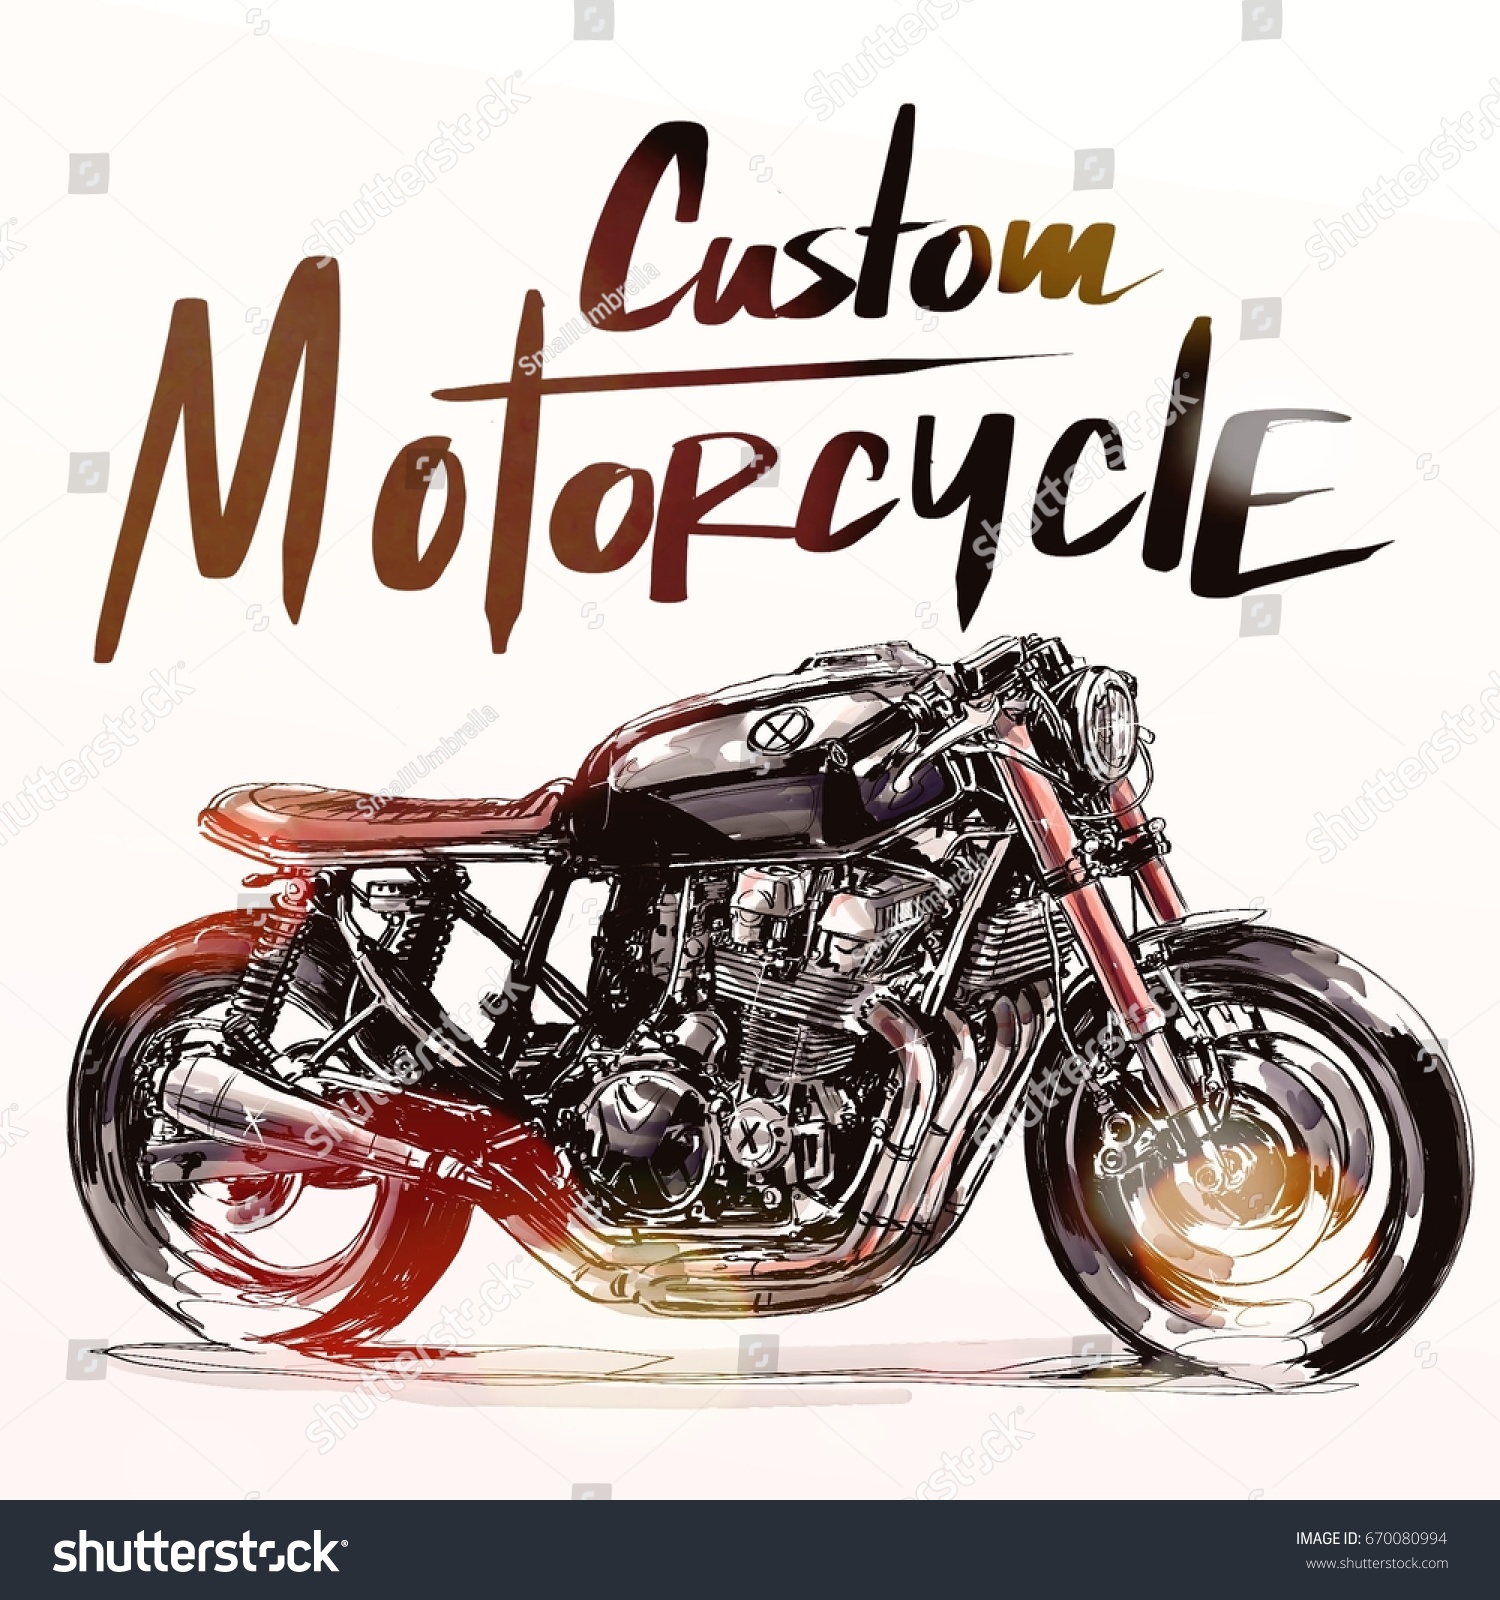 カスタムバイクポスター バイクバナー オートバイイラストレーター のイラスト素材